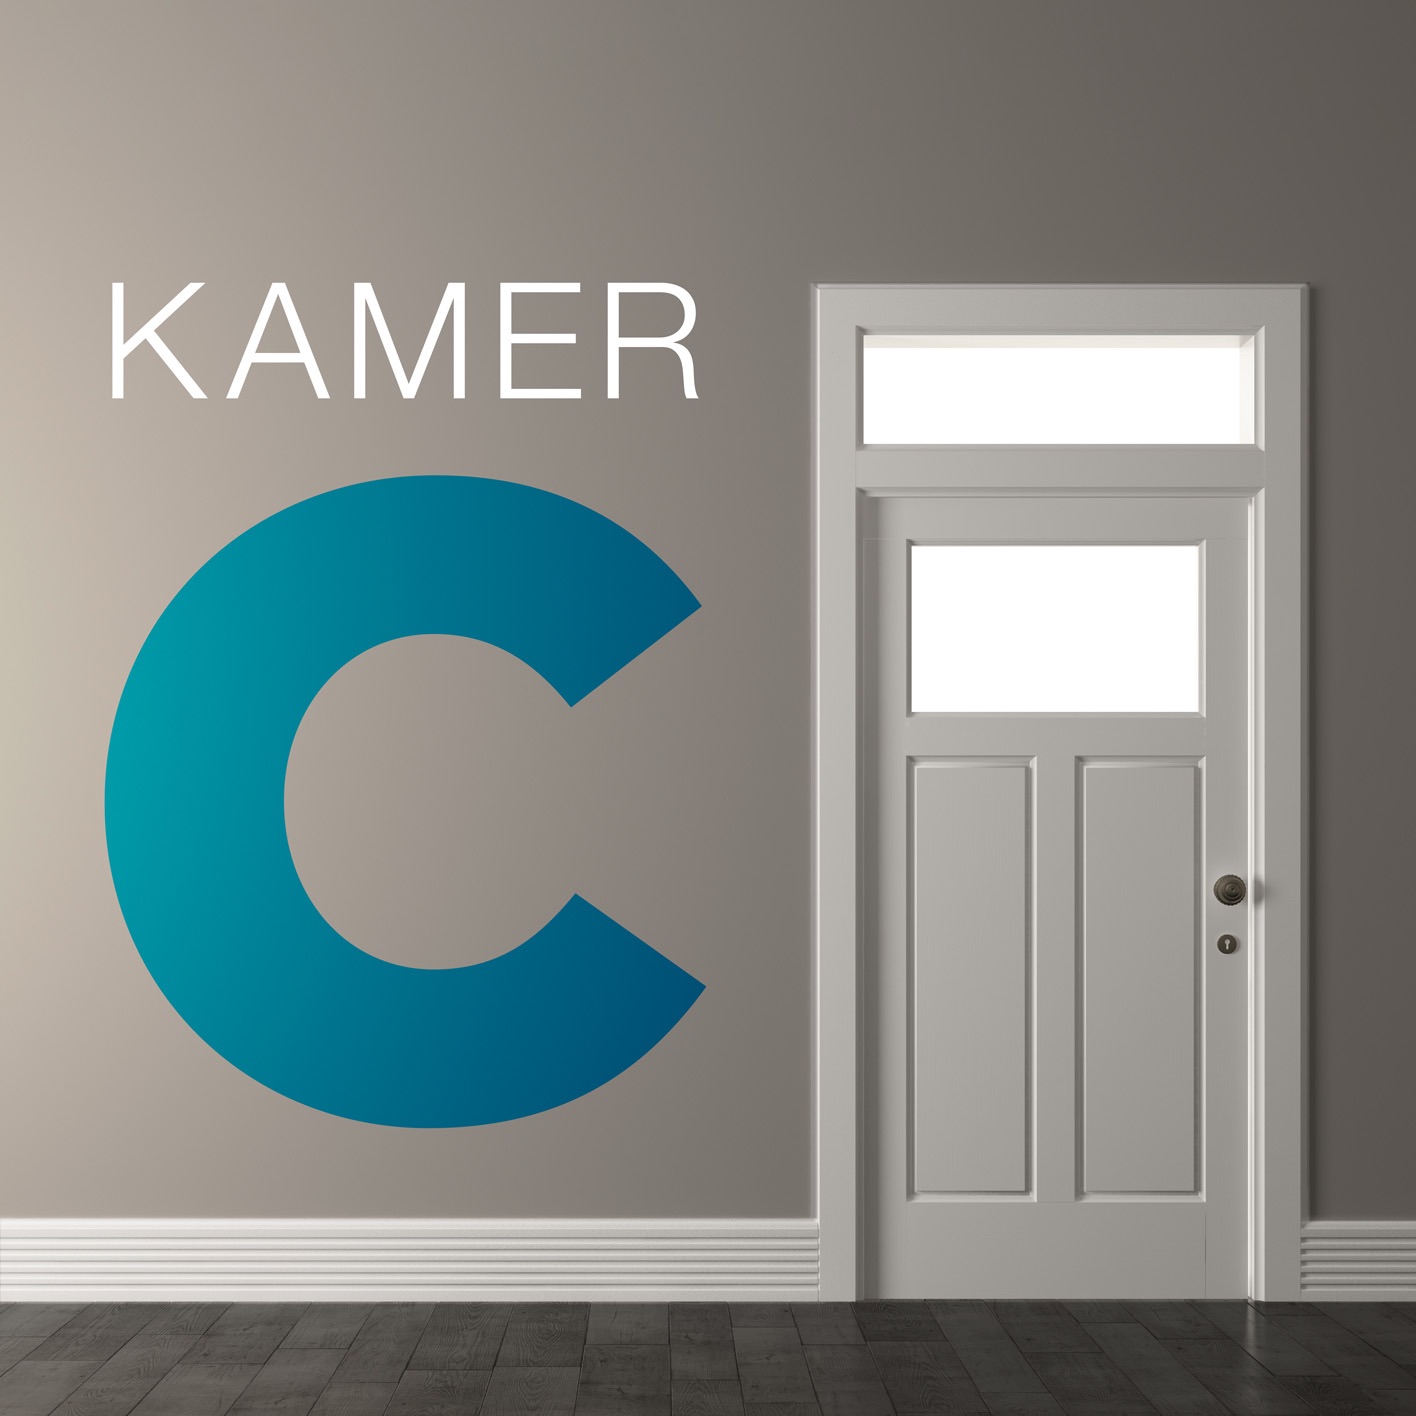 Kamer C logo